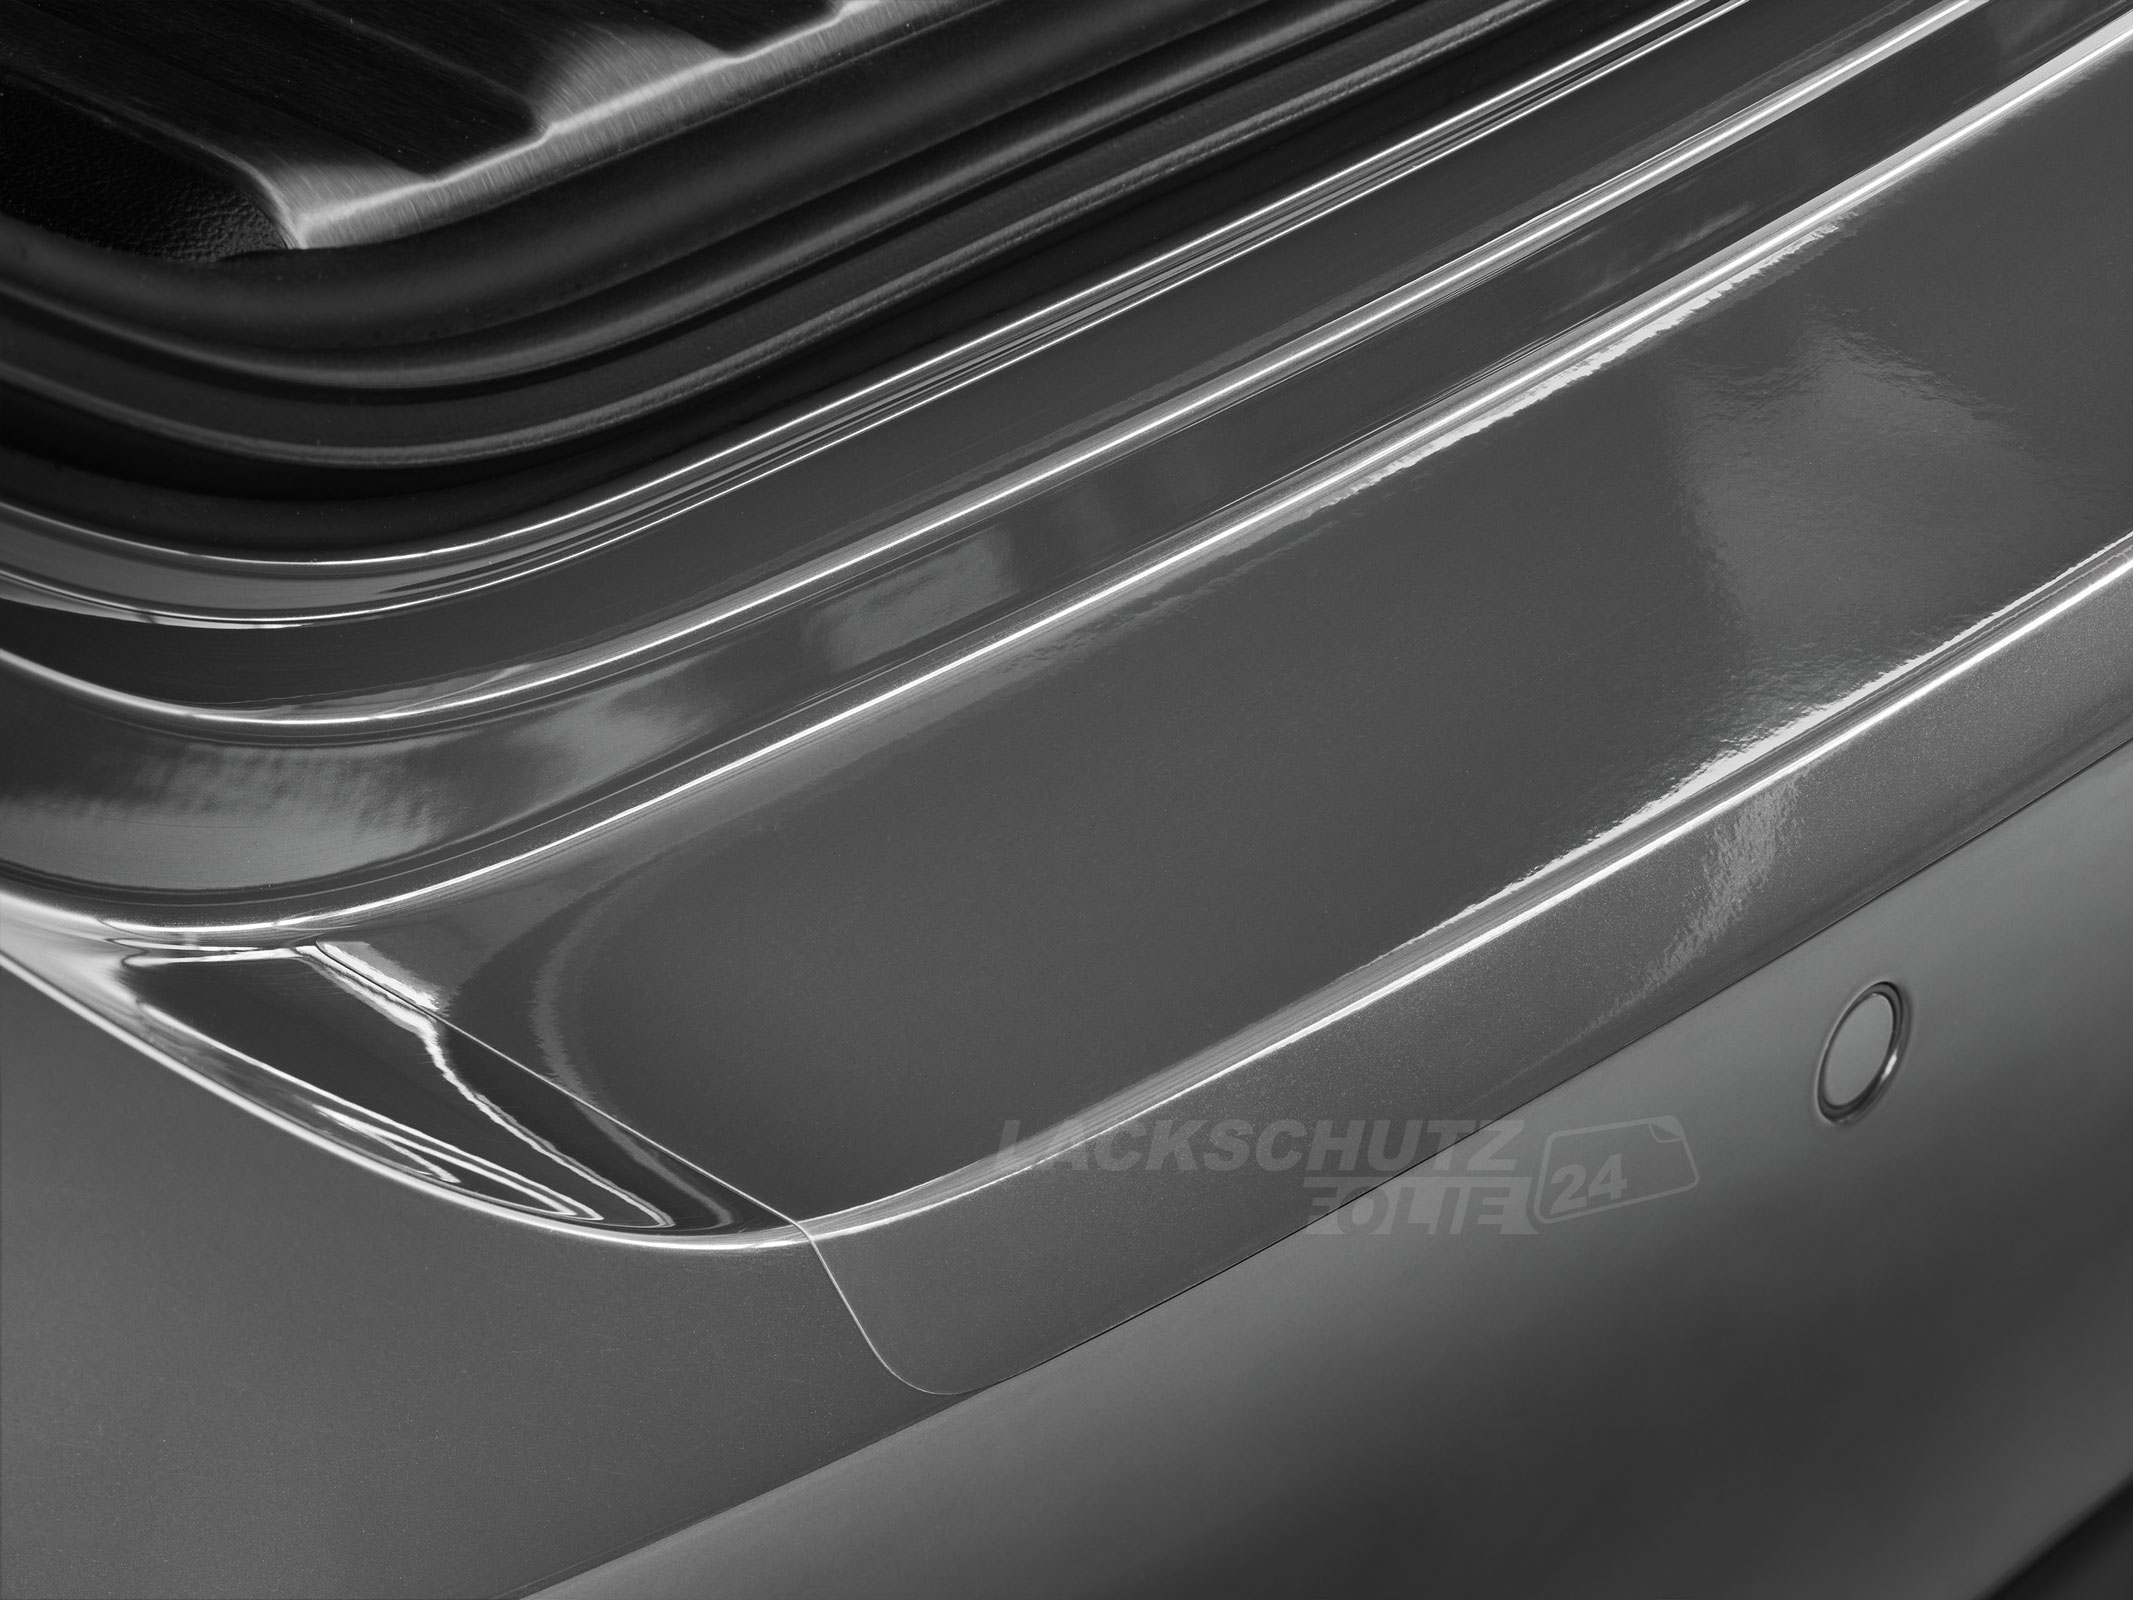 Ladekantenschutzfolie - Transparent Glatt Hochglänzend 150 µm stark für Hyundai i30 Schrägheckversion Typ GD, BJ 2012-2016